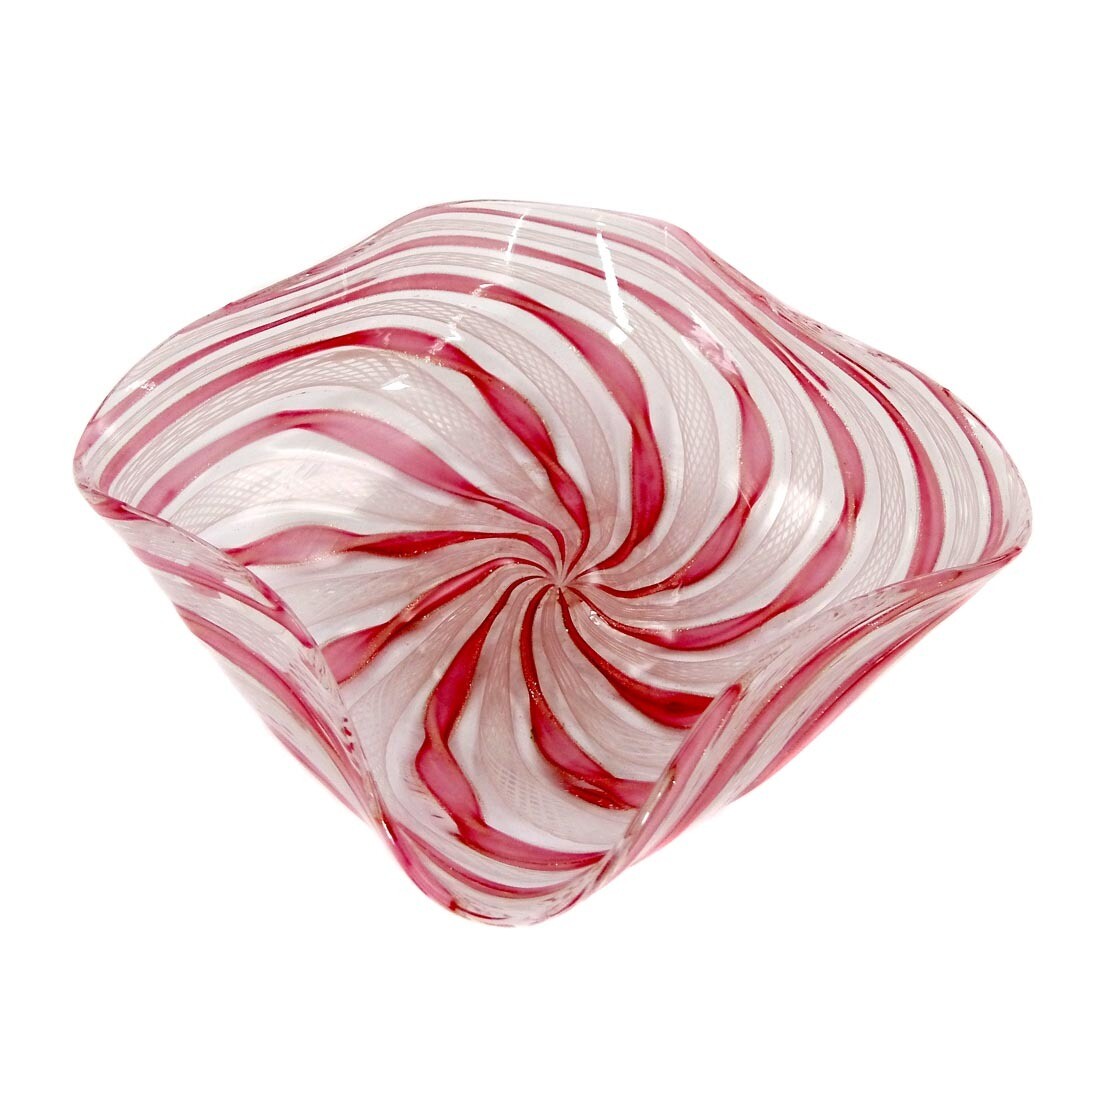 Frei geformte Zanfirico Schale mit roten und weißen Spiralfäden, um 1950